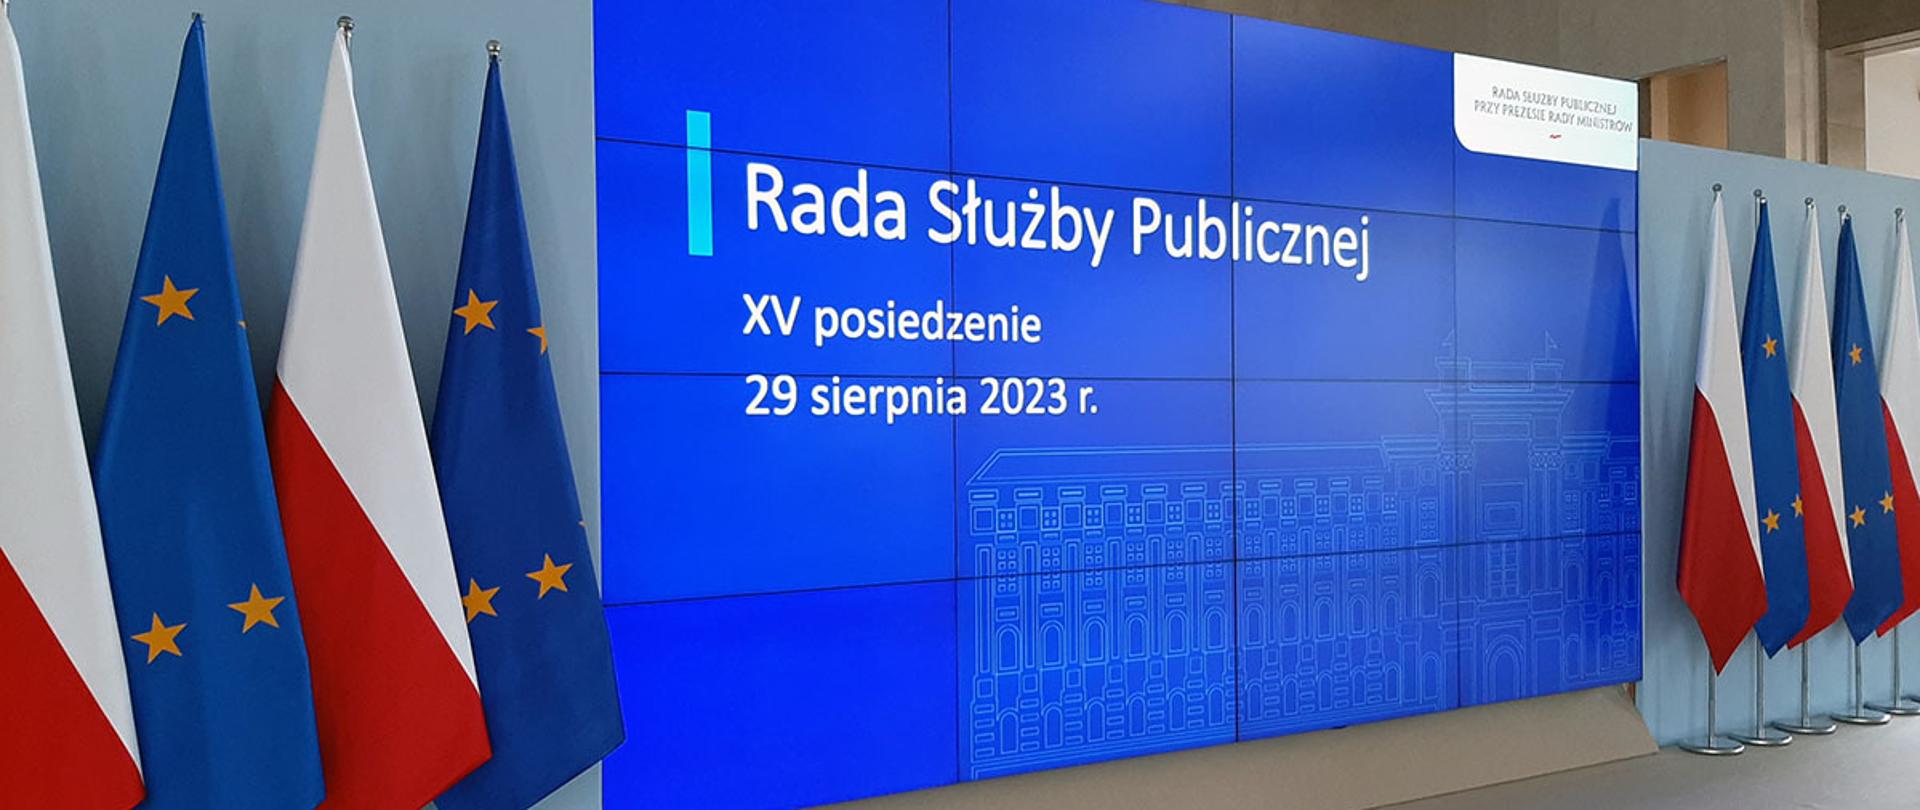 Ekran na którym wyświetlany jest napis Rada Służby Publicznej z datą posiedzenia. Po obu stronach flagi Polski i Unii Europejskiej